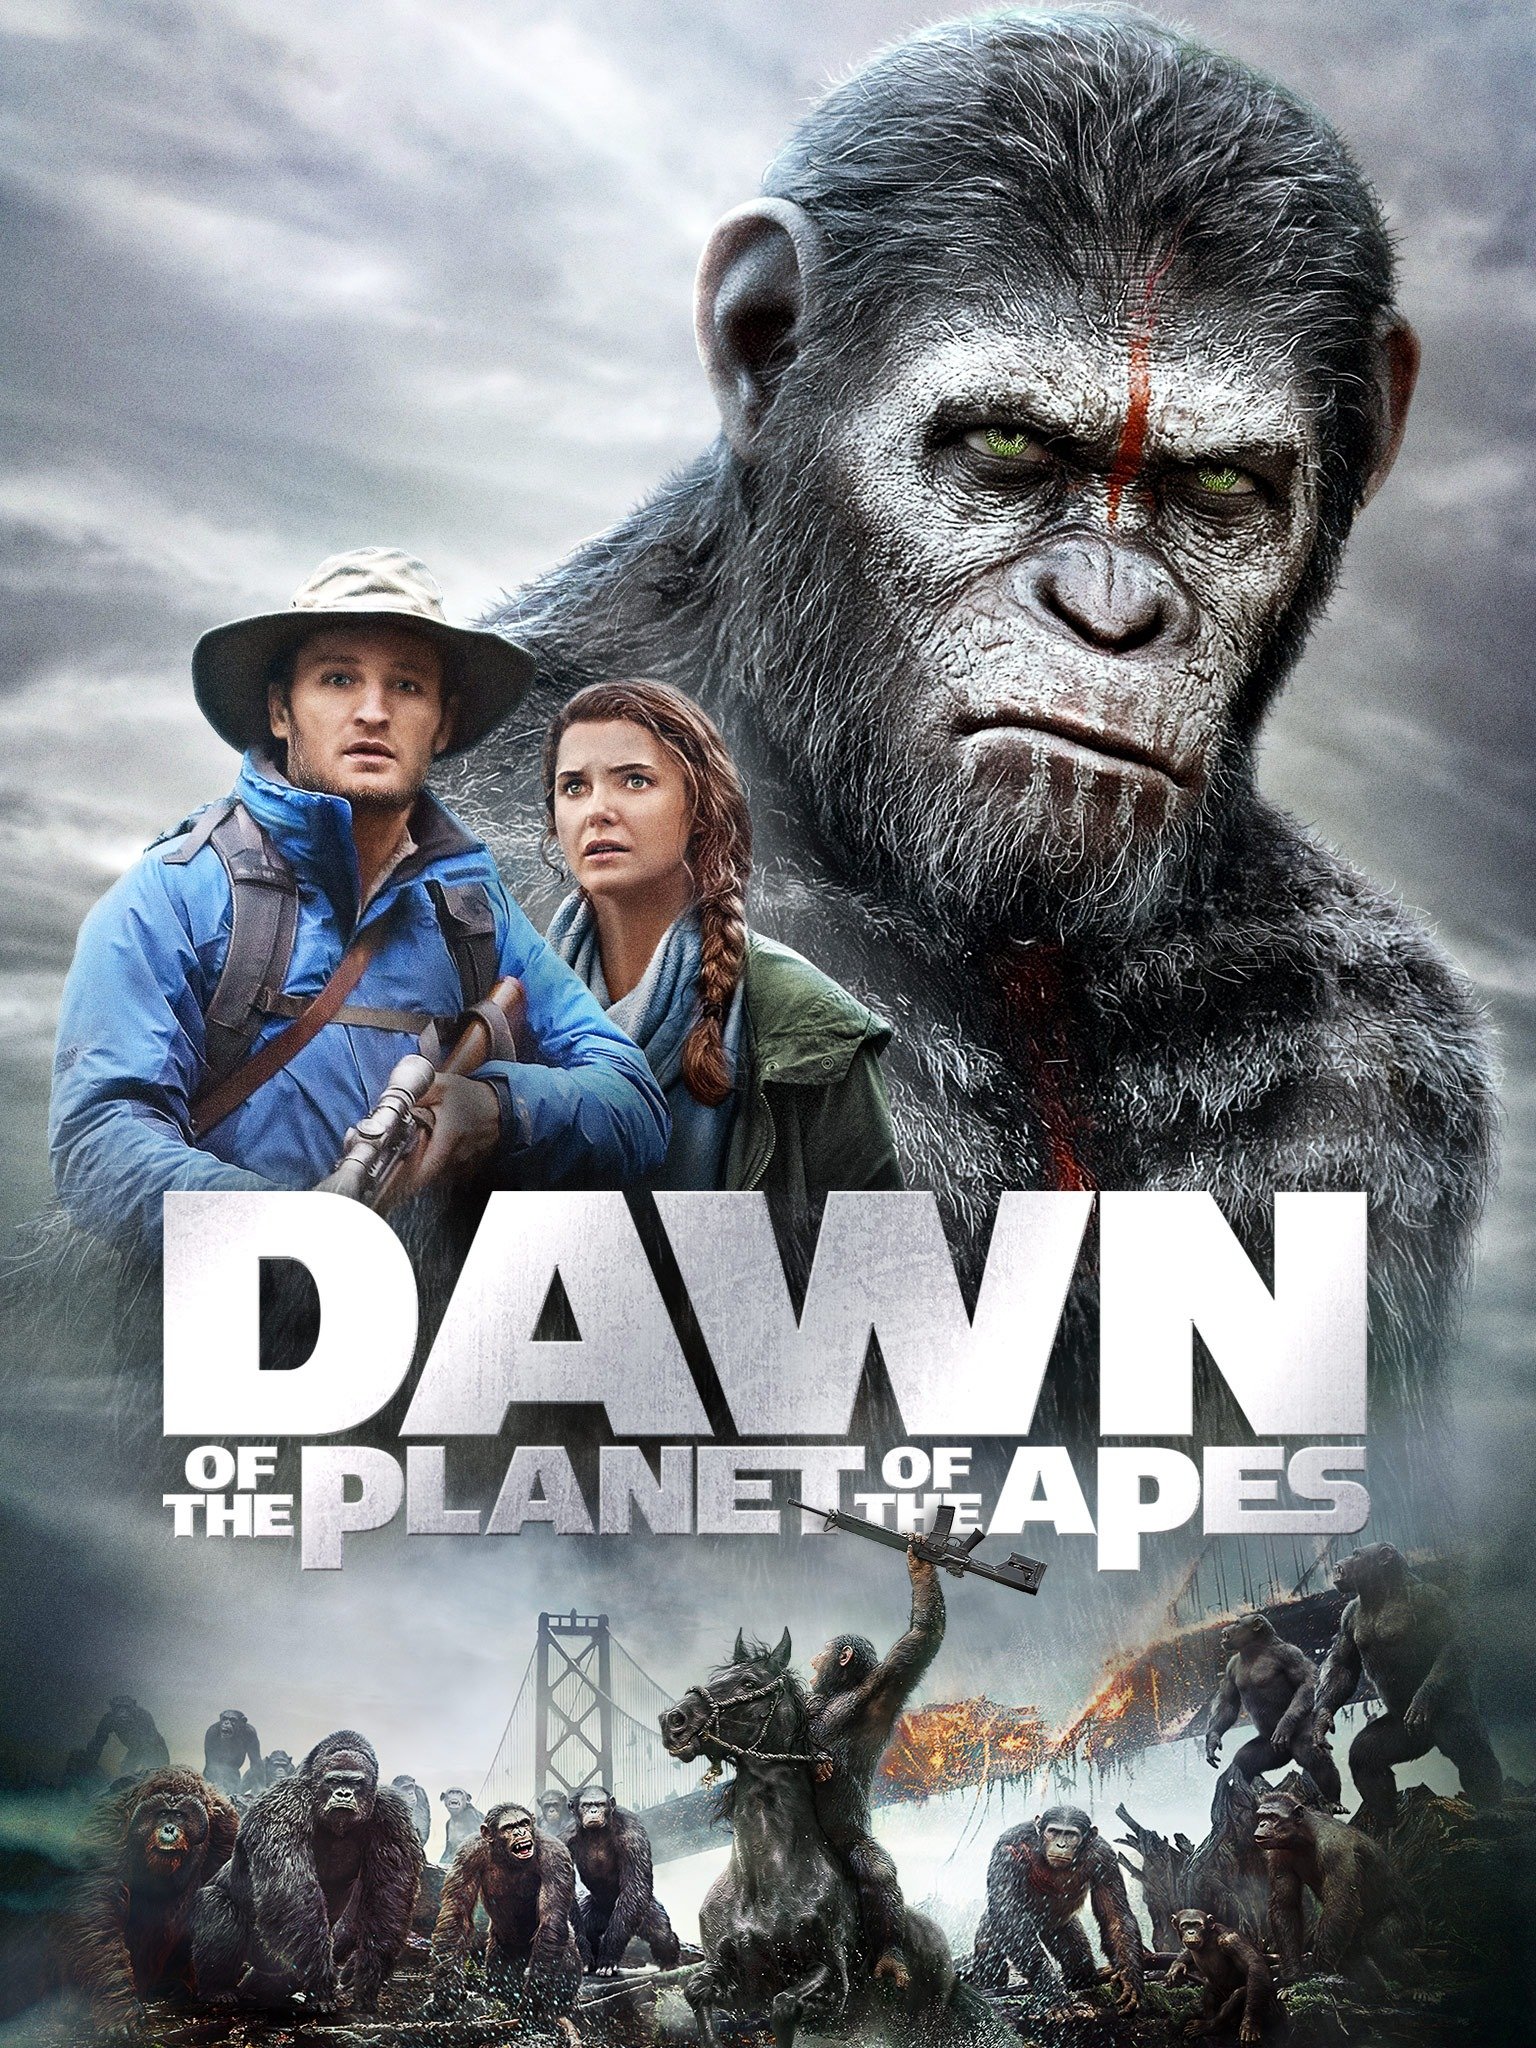 ดูหนังออนไลน์ฟรี Dawn Of The Planet of The Apes (2014) รุ่งอรุณแห่งพิภพวานร